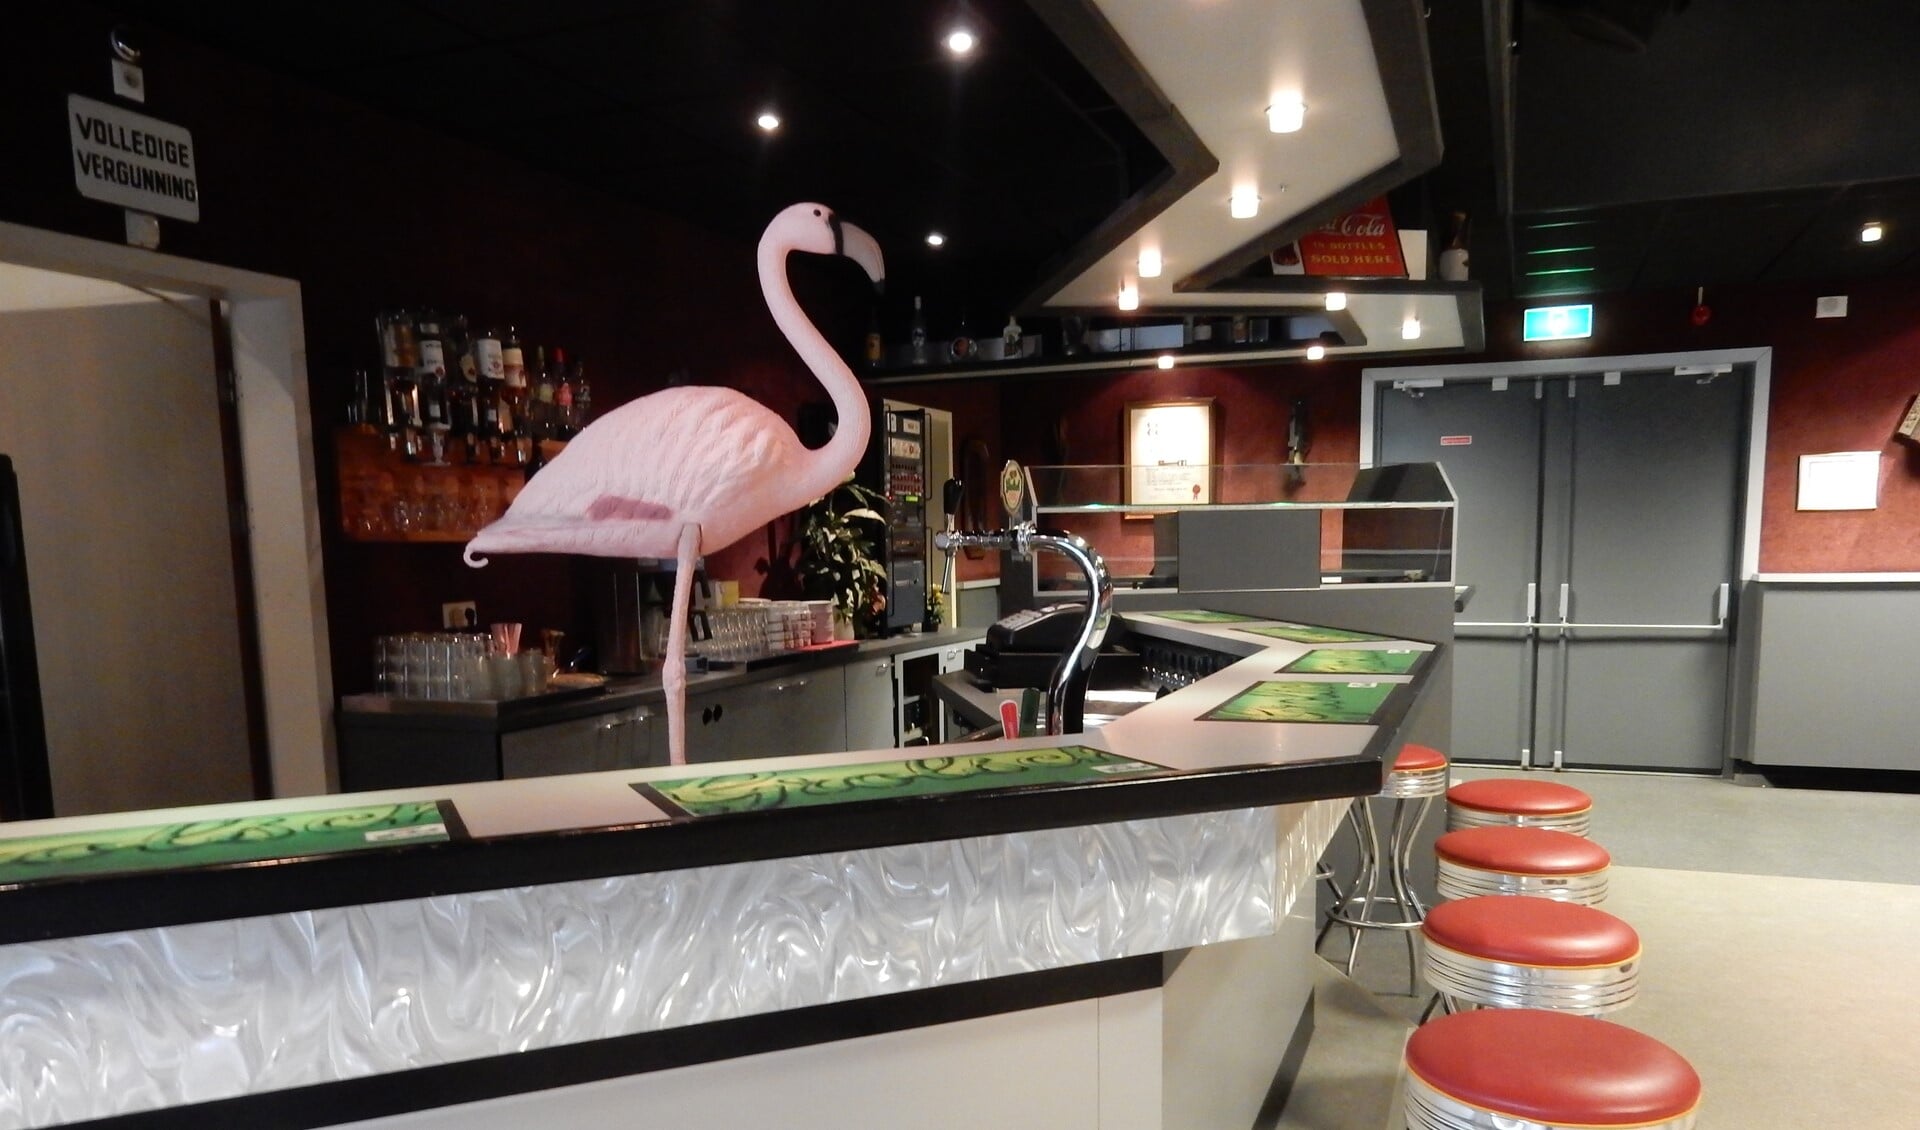 De Flamingo staat nog wel op één poot, maar wankelt en dreigt zelfs om te vallen. Foto: Joop van der Hor